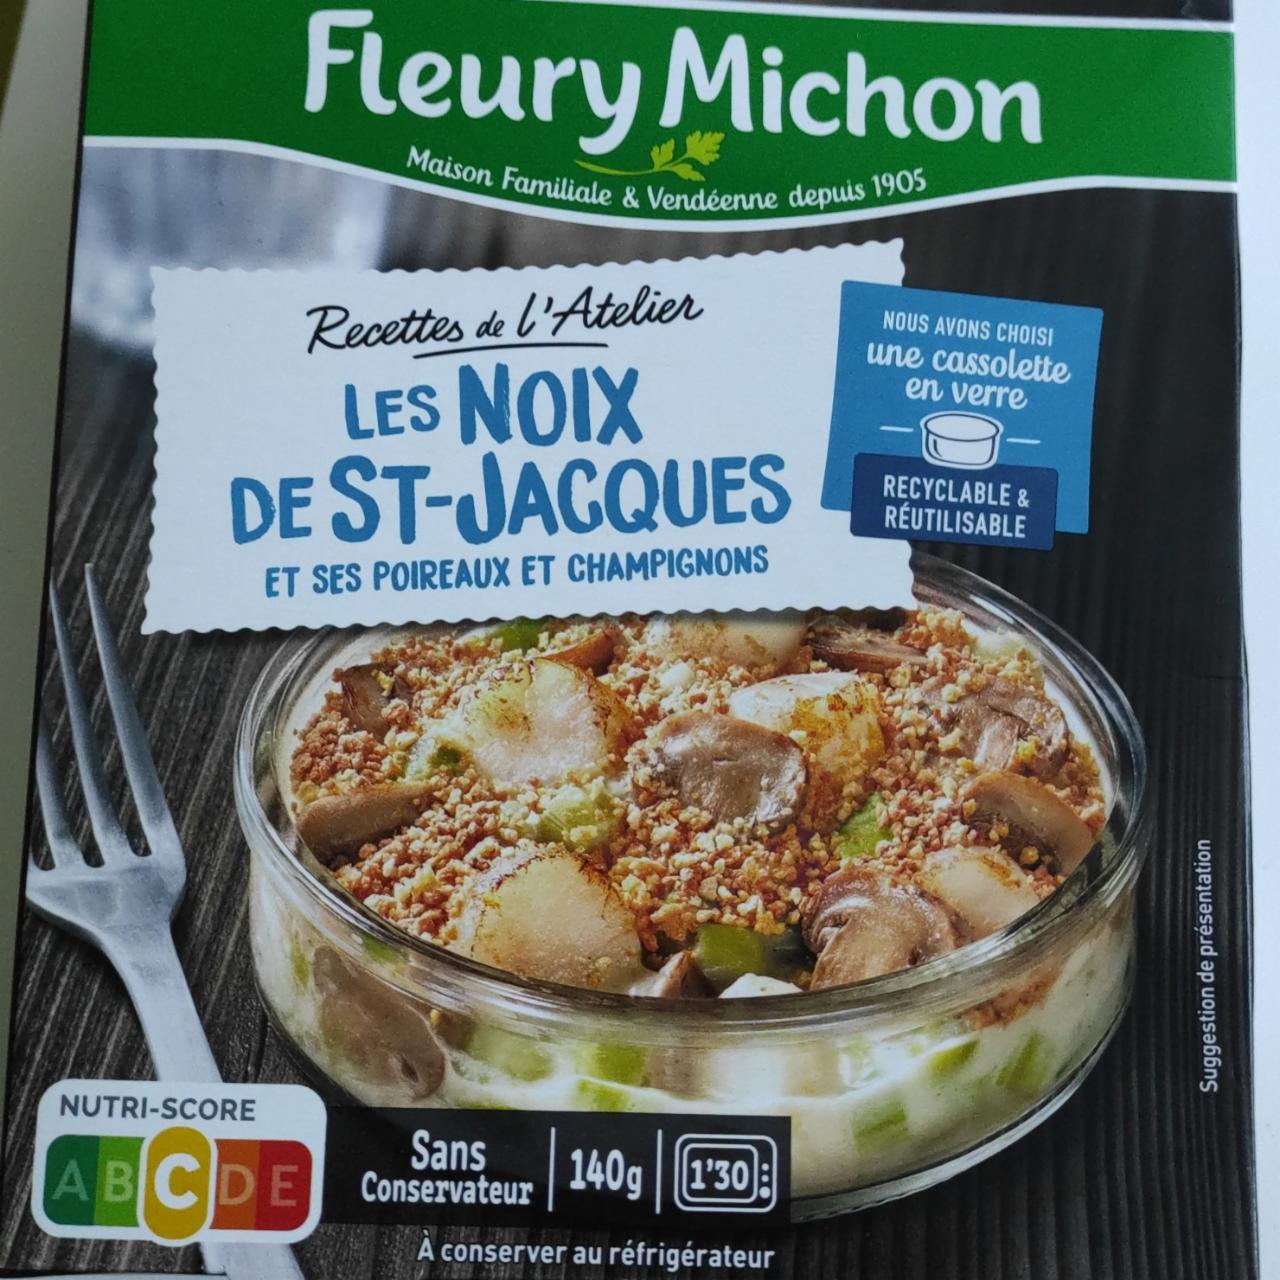 Fotografie - Les noix de ST-Jacques et ses poireaux et champignons Fleury Michon